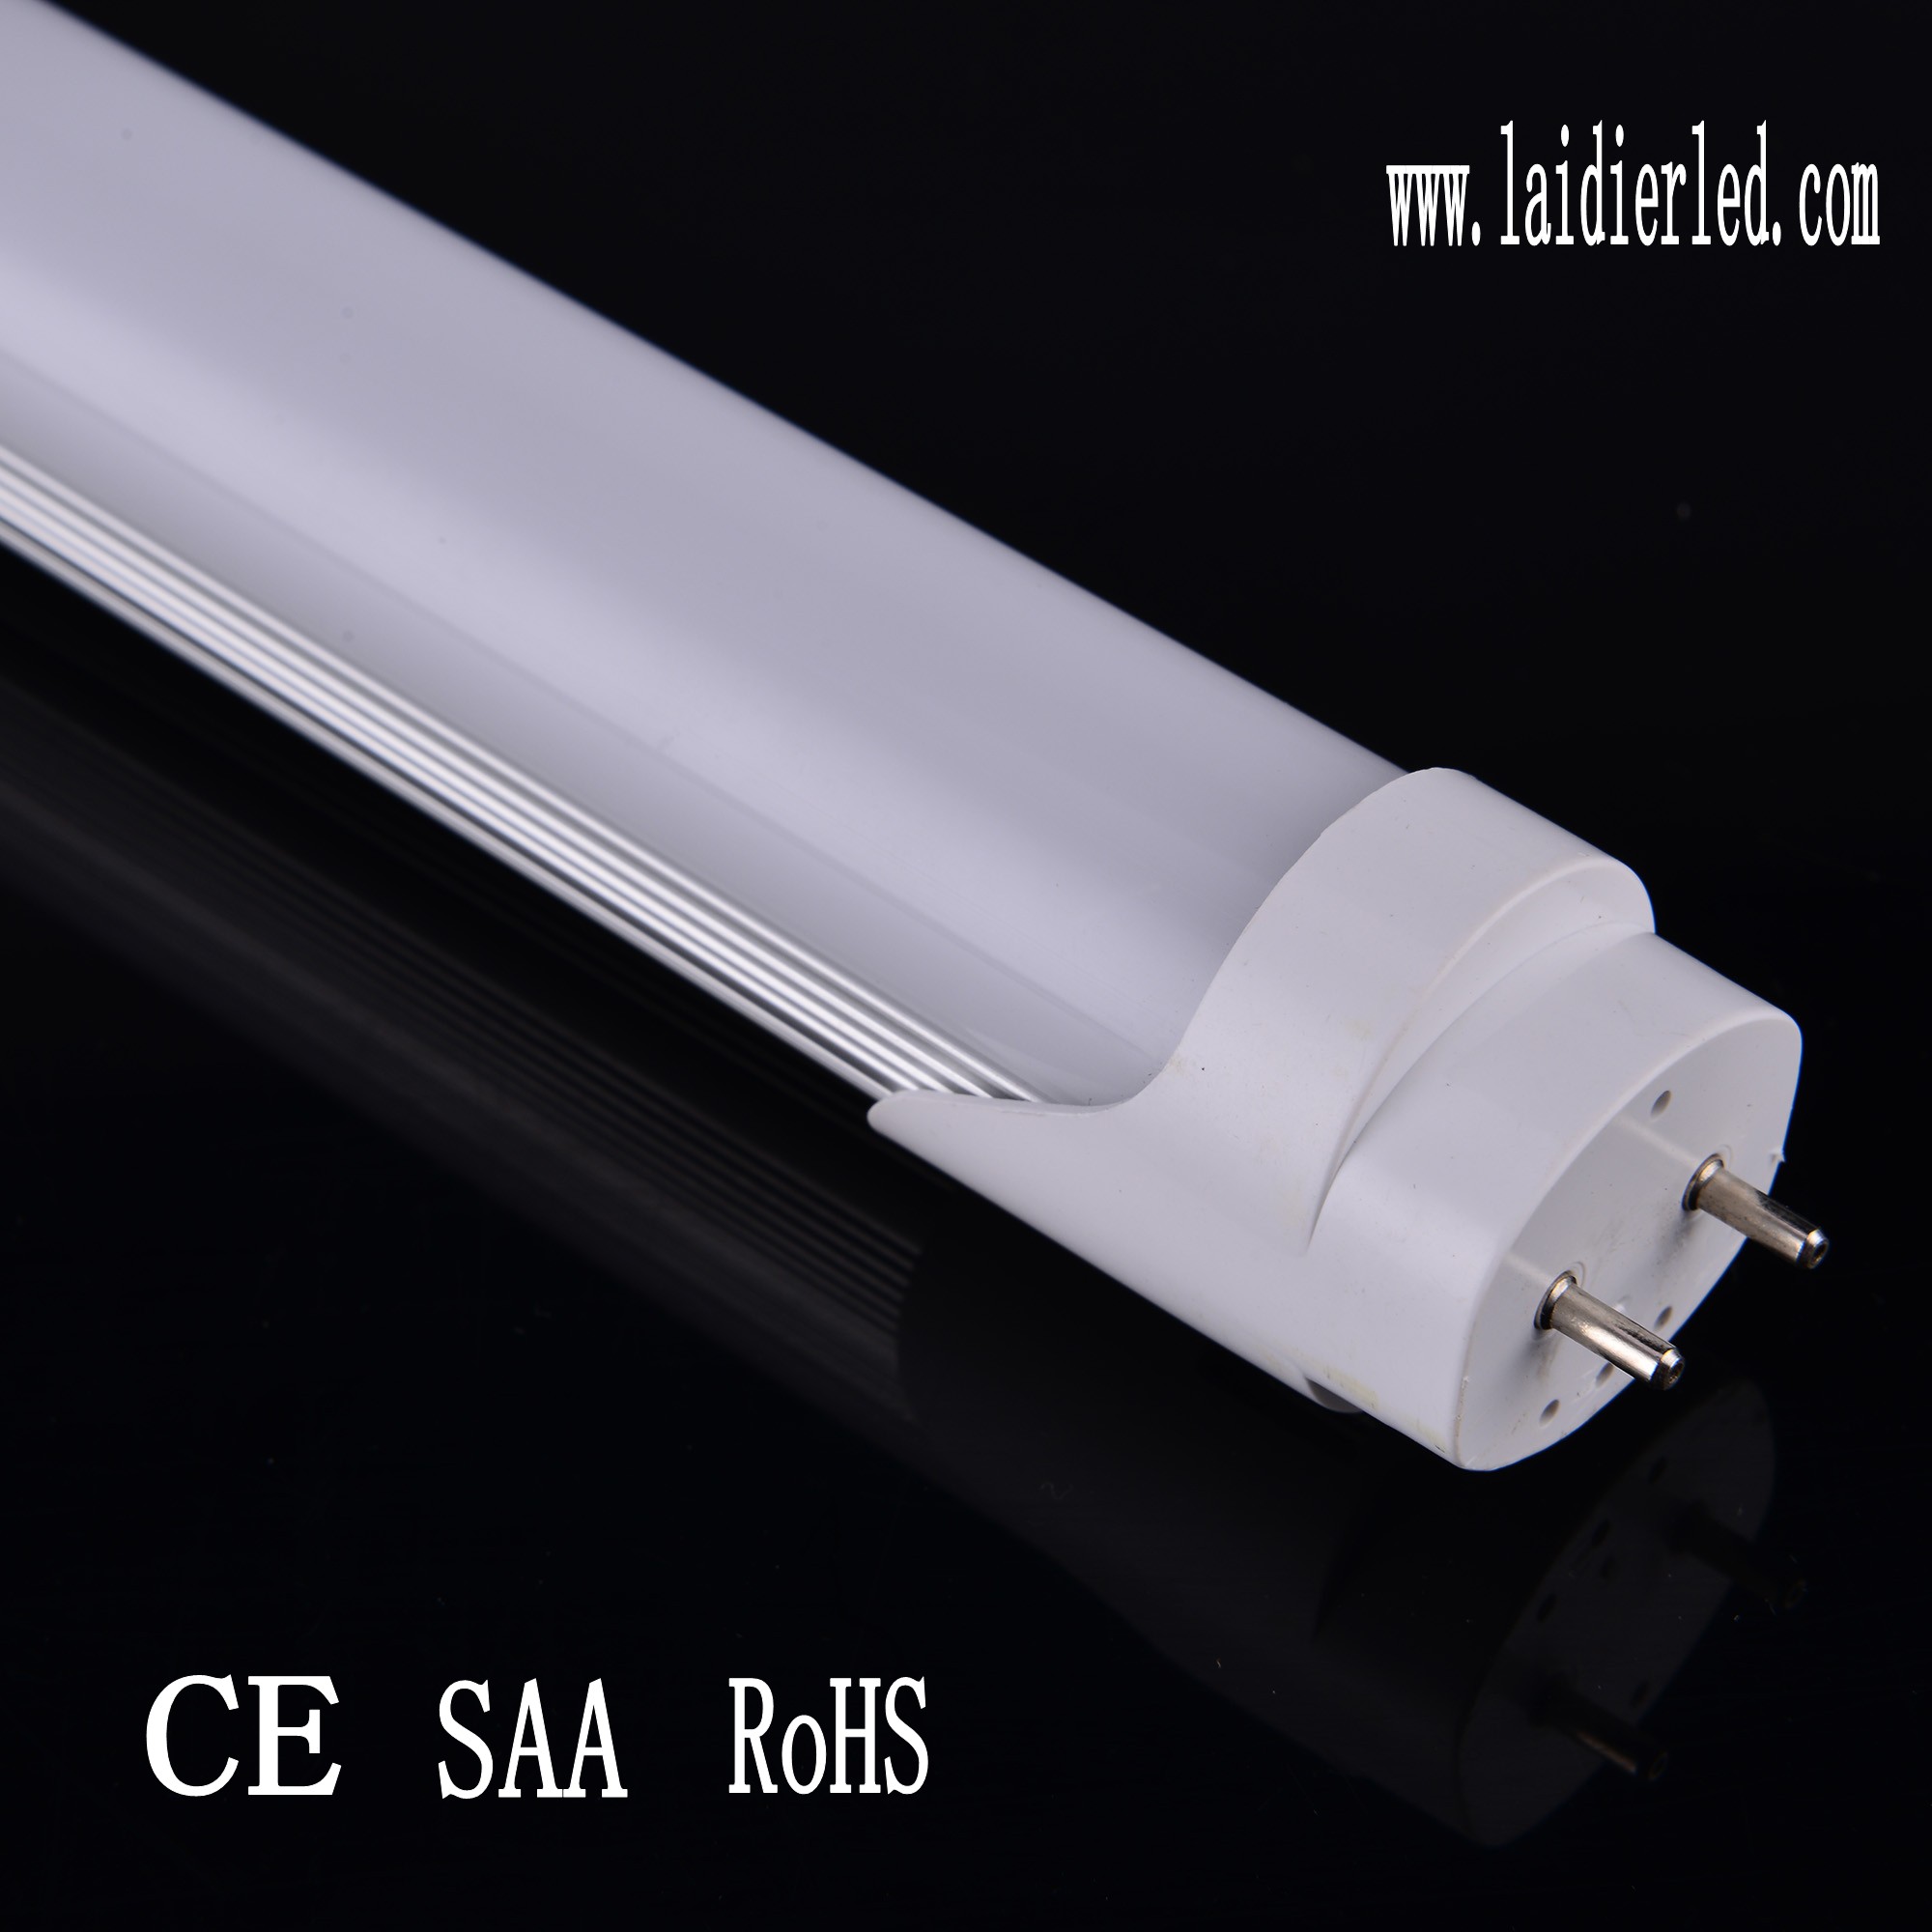 Special design LED Tube T8 0.6M 10W 900lumens Aluminum PCB